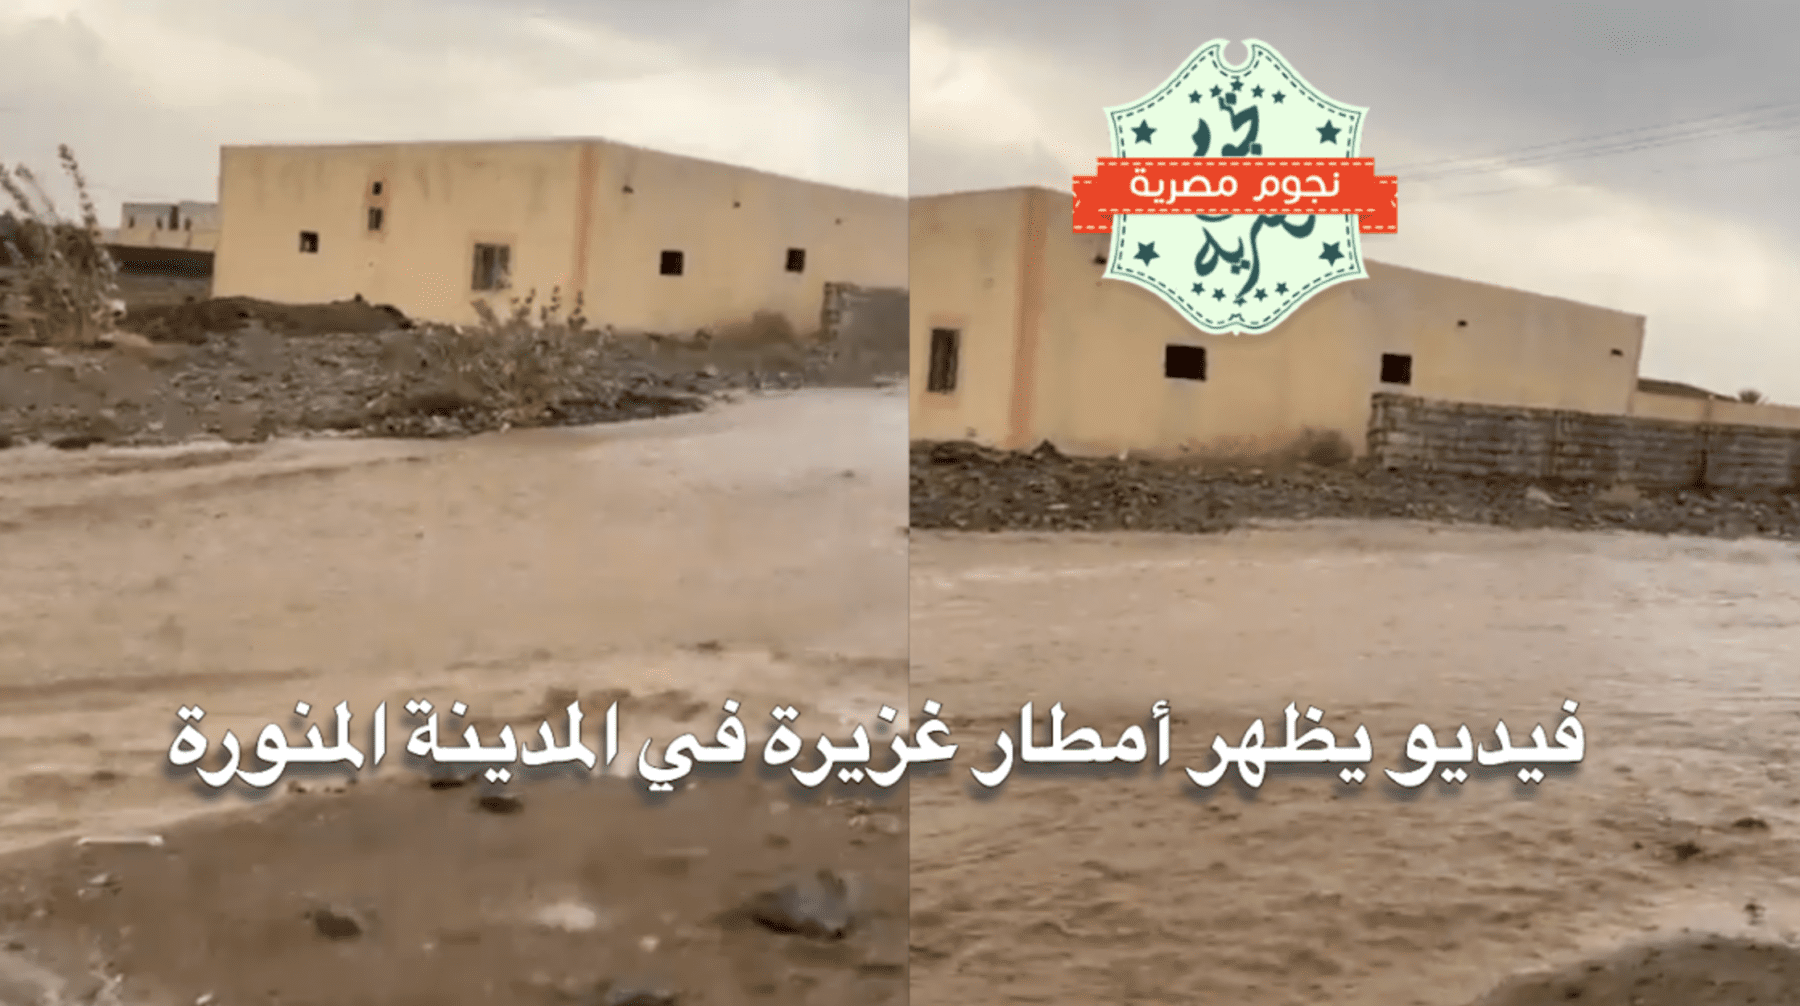 فيديو يظهر أمطار غزيرة في المدينة المنورة